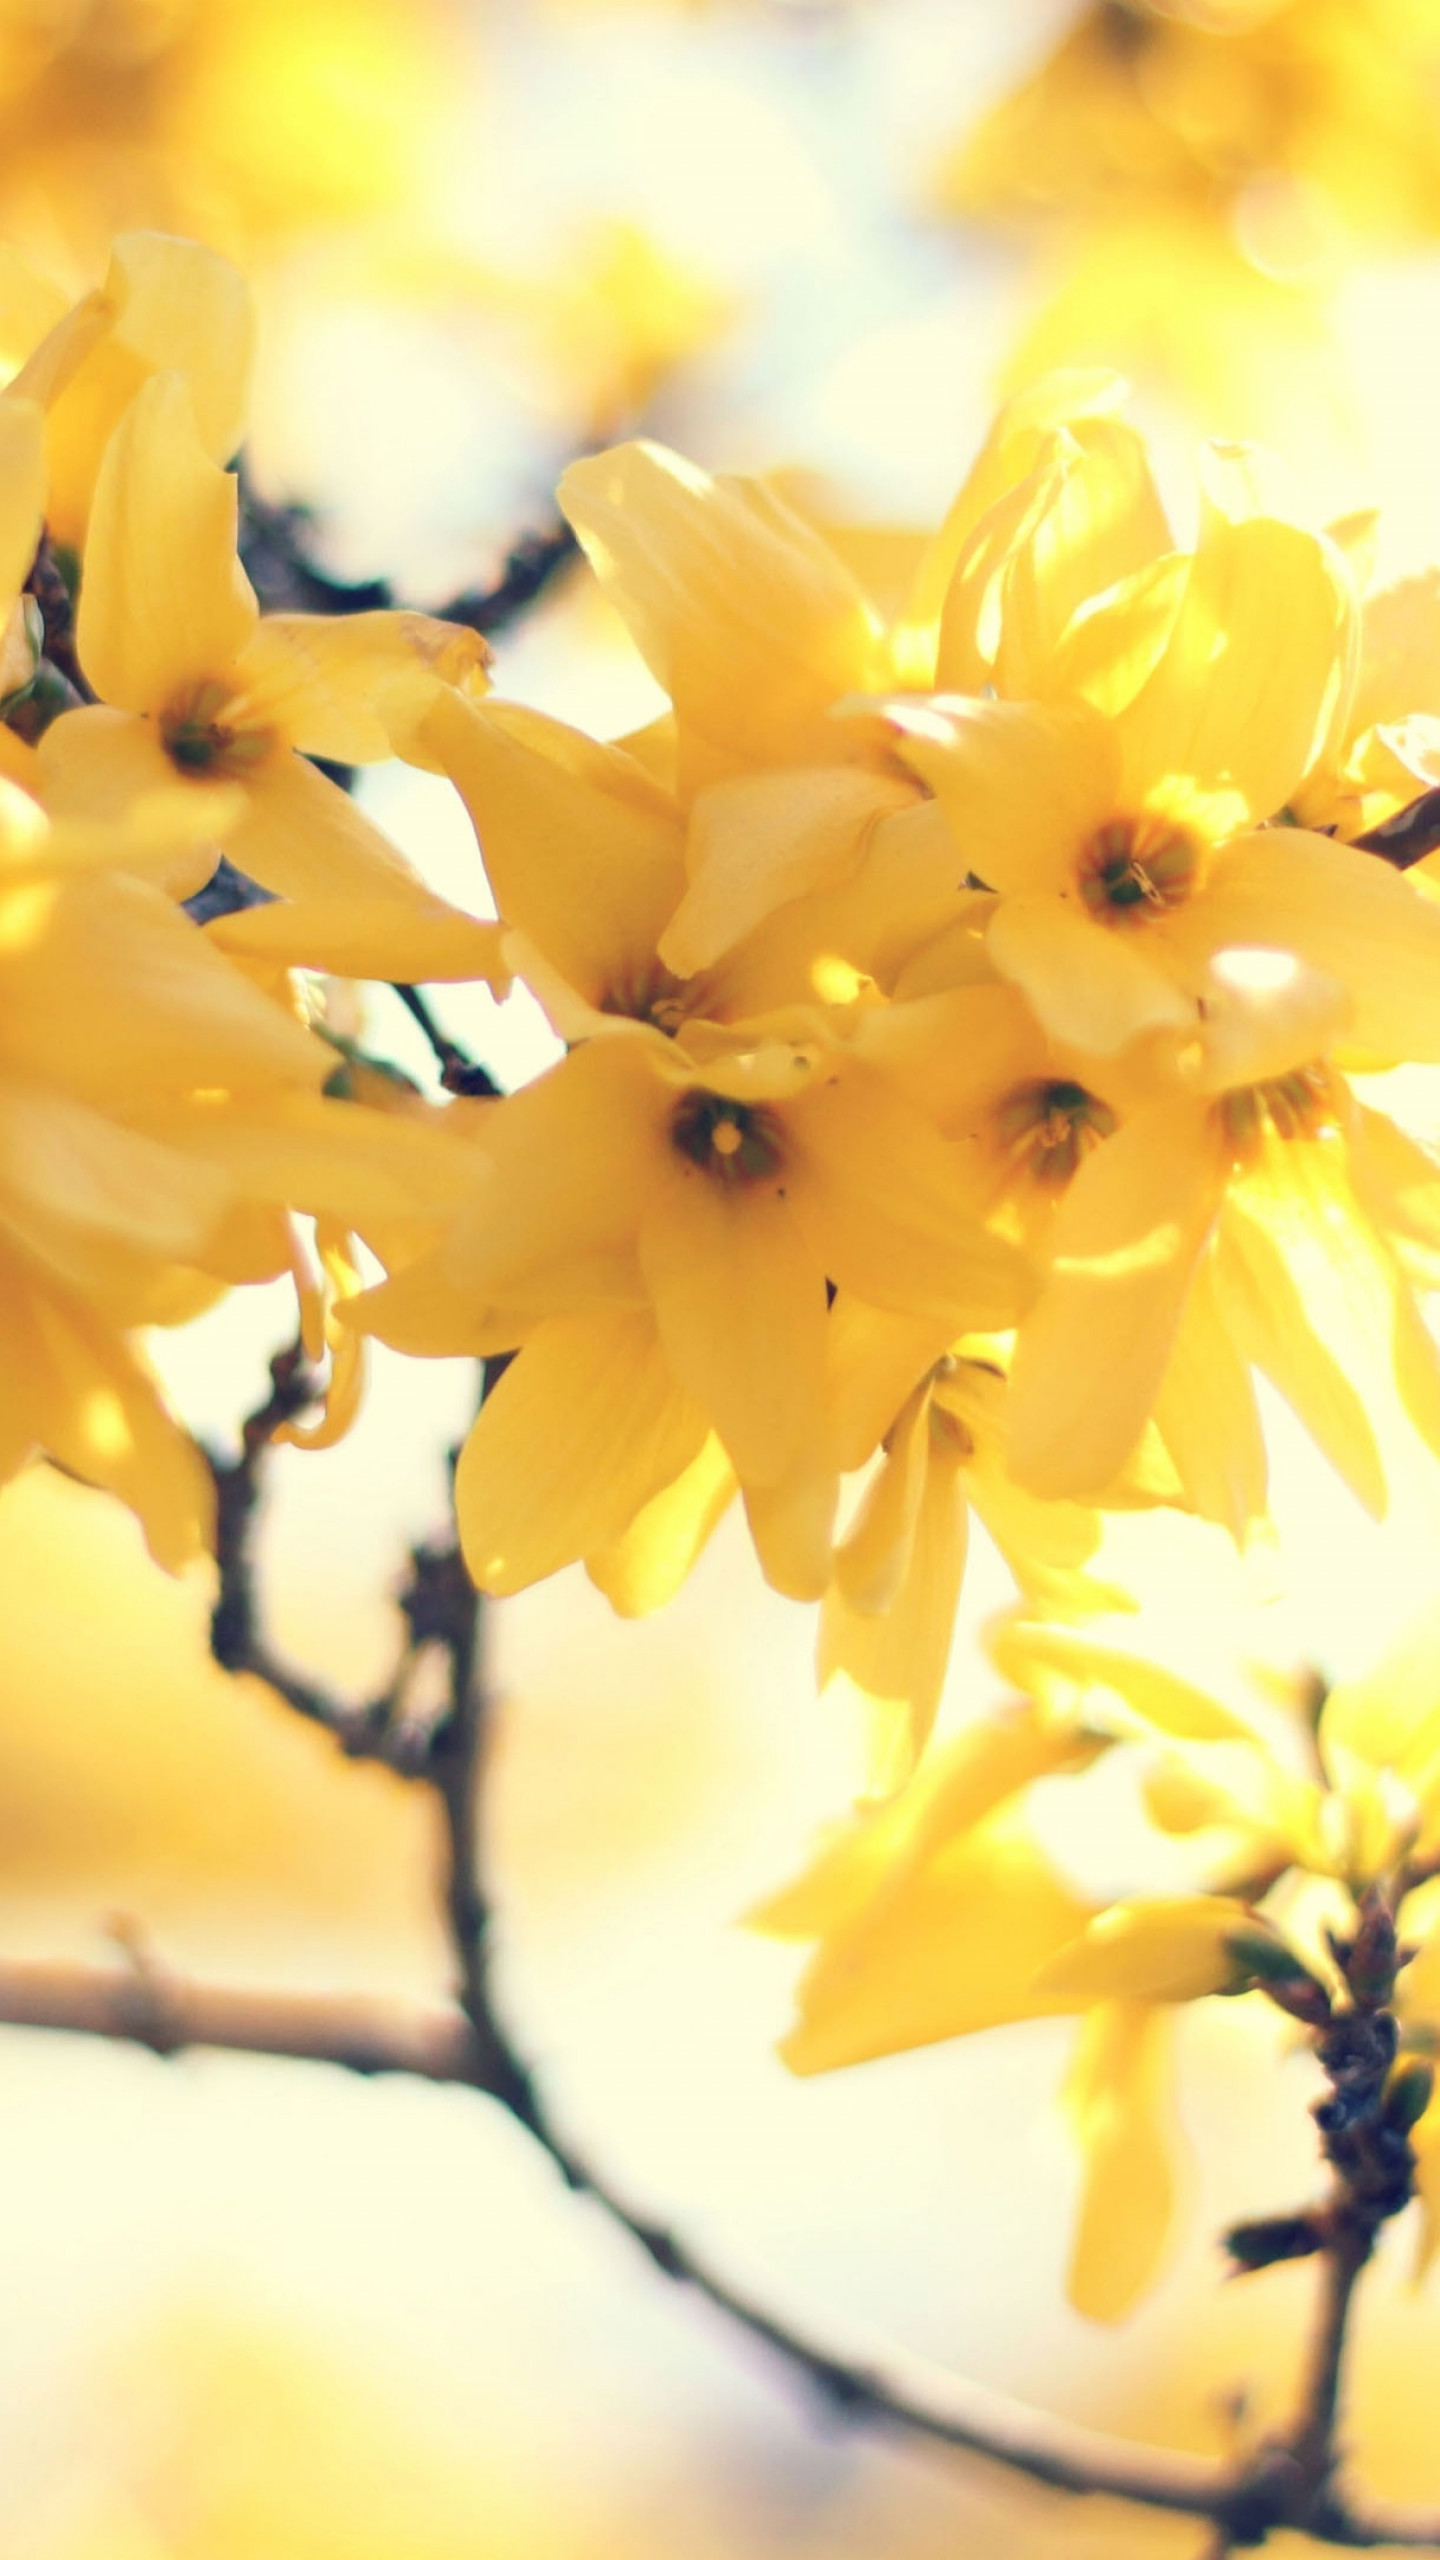 Flowers 5k. Желтые обои с цветочками фото. Пооевы5 цветы. Амазинг еллоу